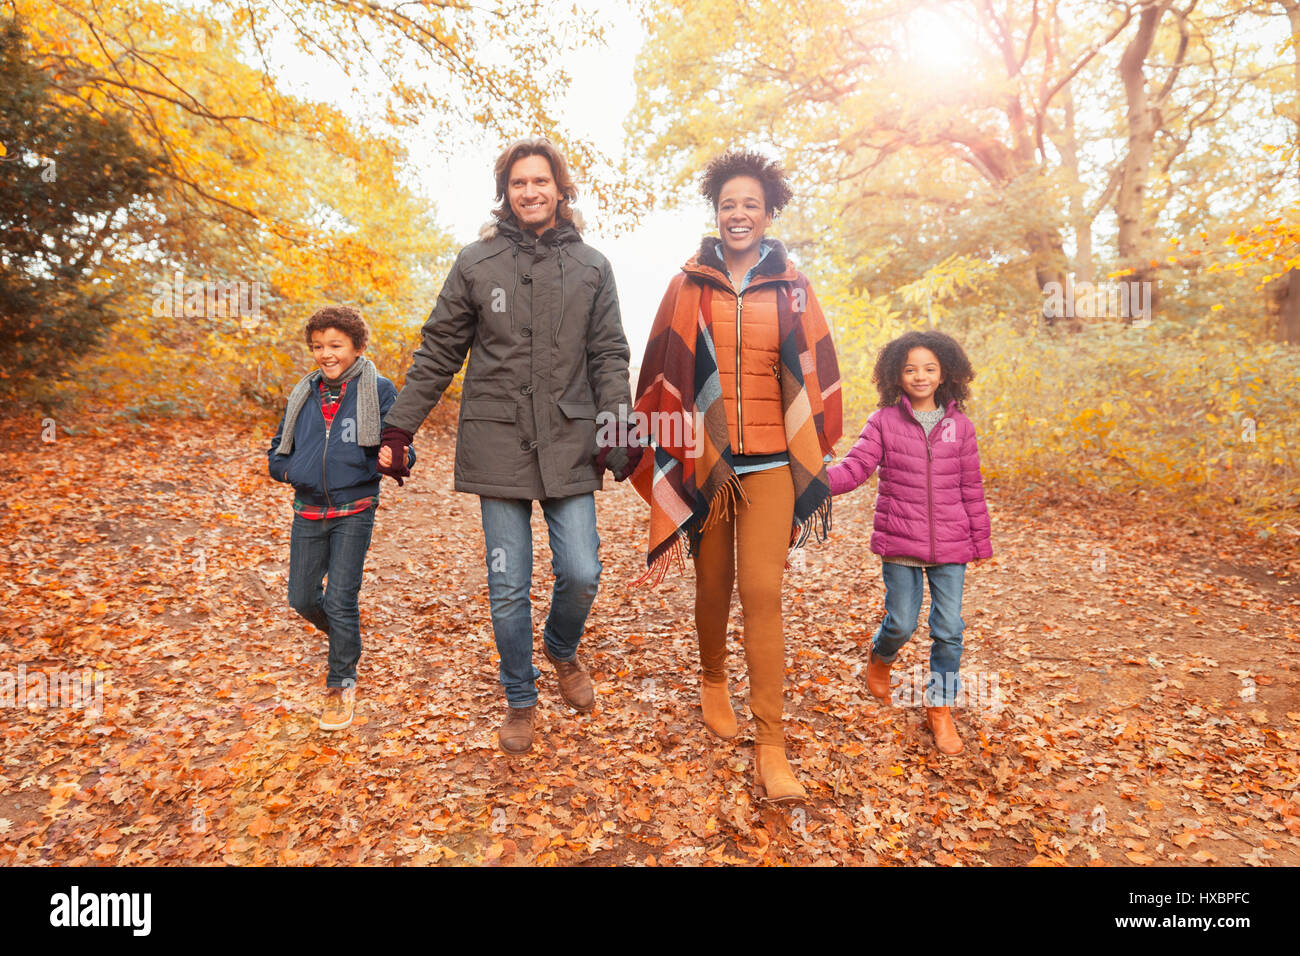 Porträt, Lächeln junge Familie Hand in Hand zu Fuß unterwegs im Herbst park Stockfoto